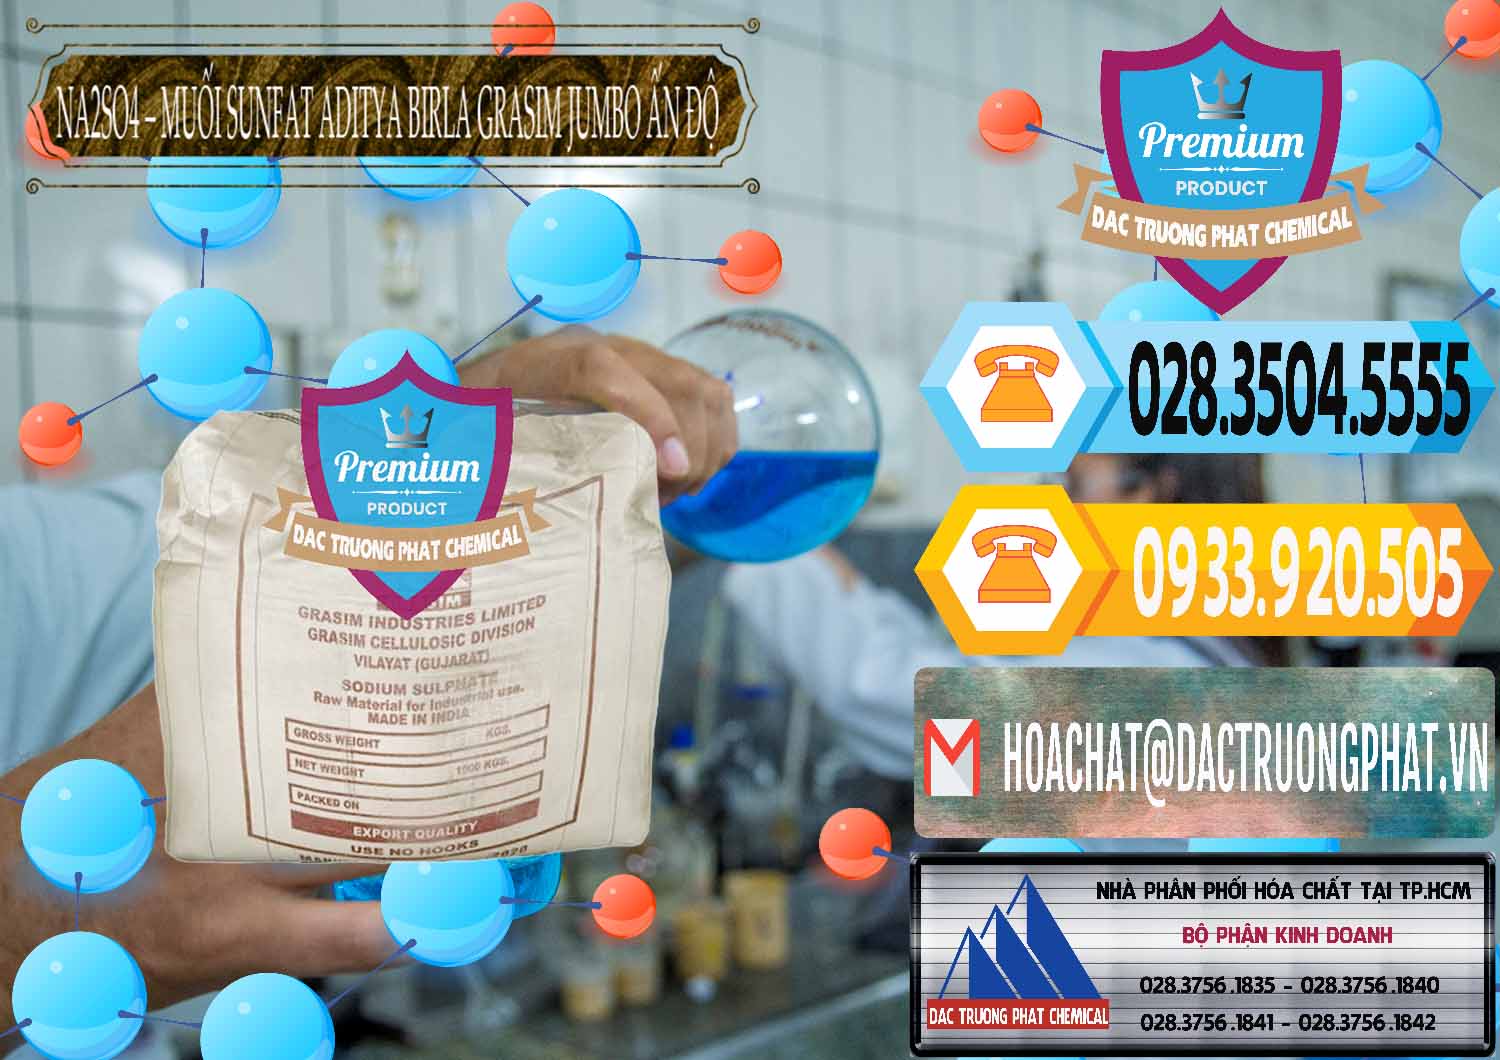 Nơi phân phối _ bán Sodium Sulphate - Muối Sunfat Na2SO4 Jumbo Bành Aditya Birla Grasim Ấn Độ India - 0357 - Nơi cung cấp - phân phối hóa chất tại TP.HCM - hoachattayrua.net